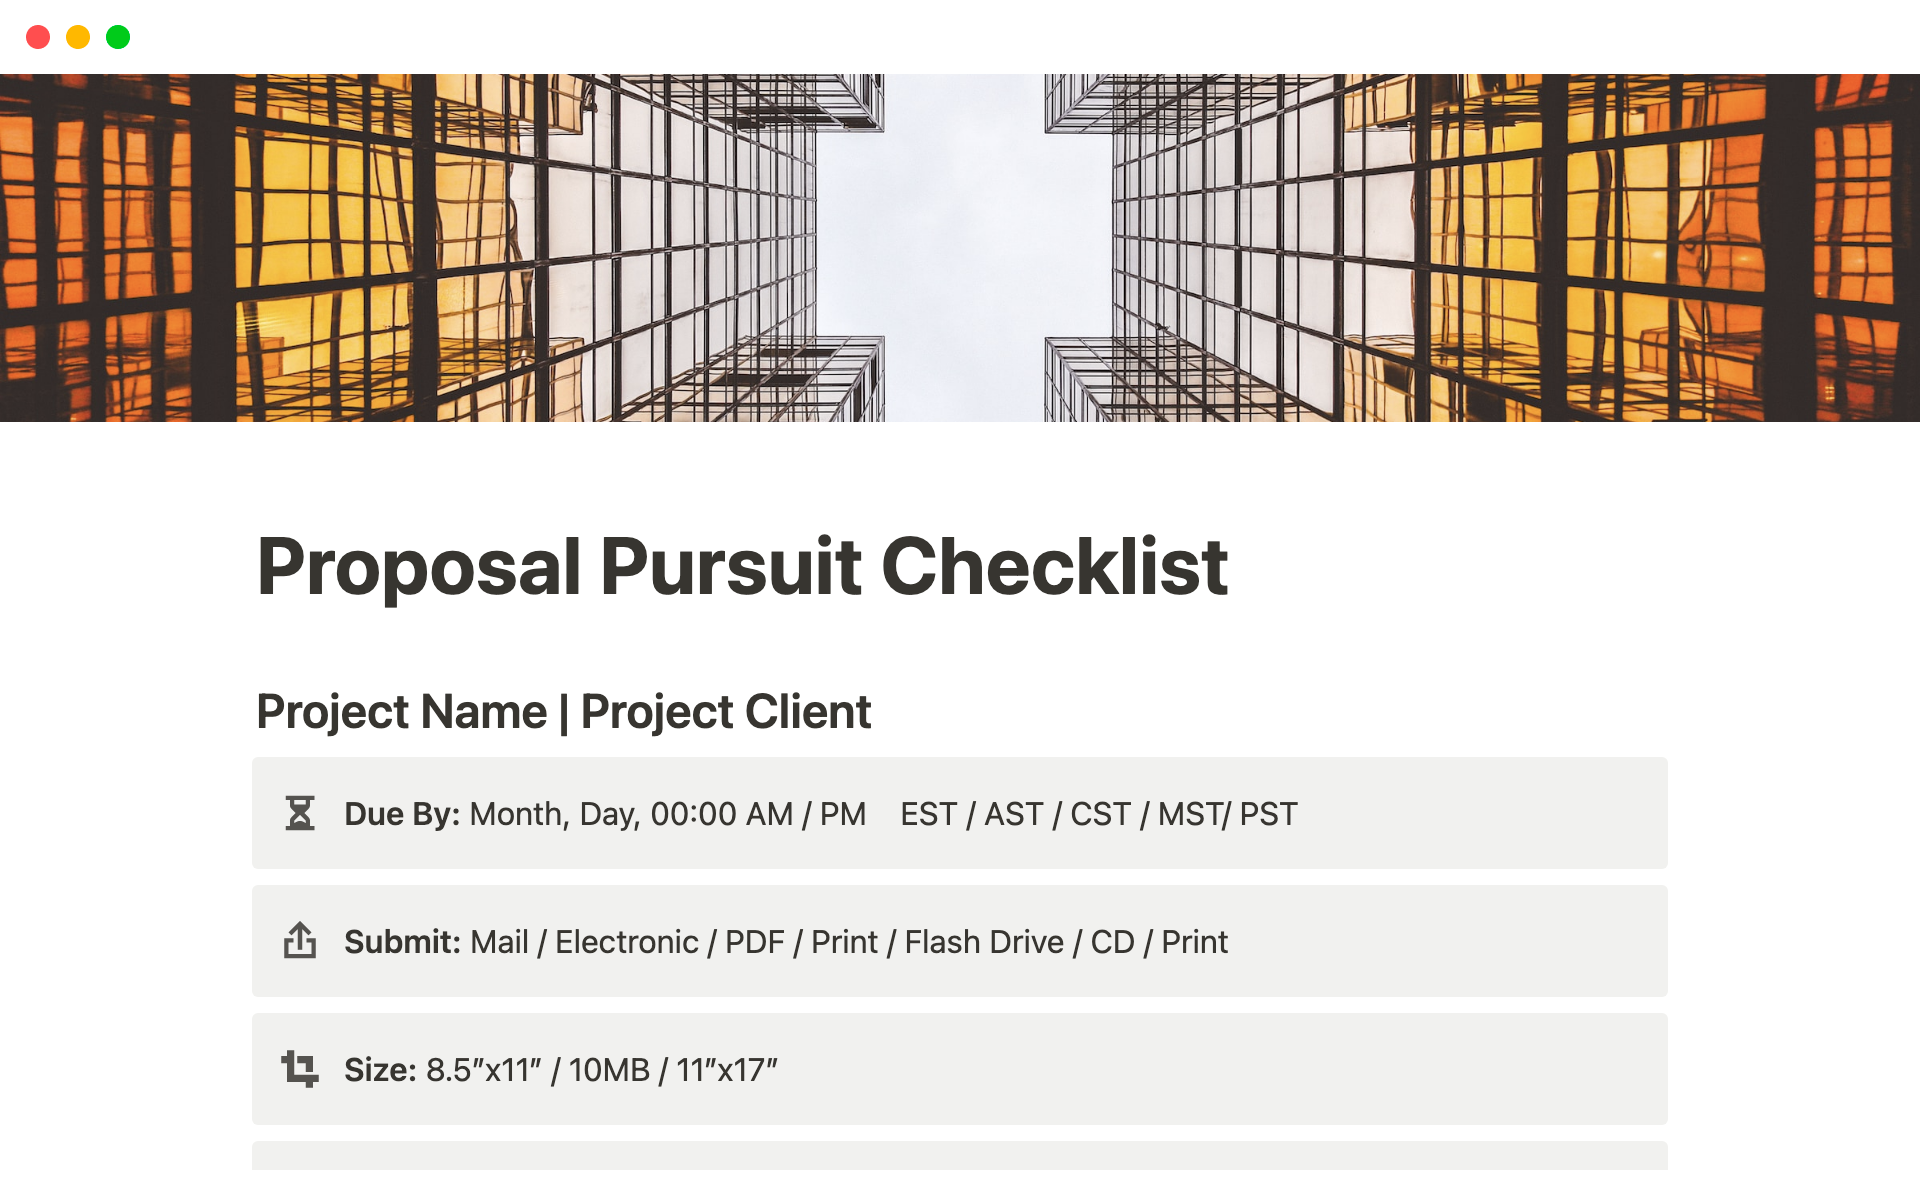 Proposal Pursuit Checklistのテンプレートのプレビュー